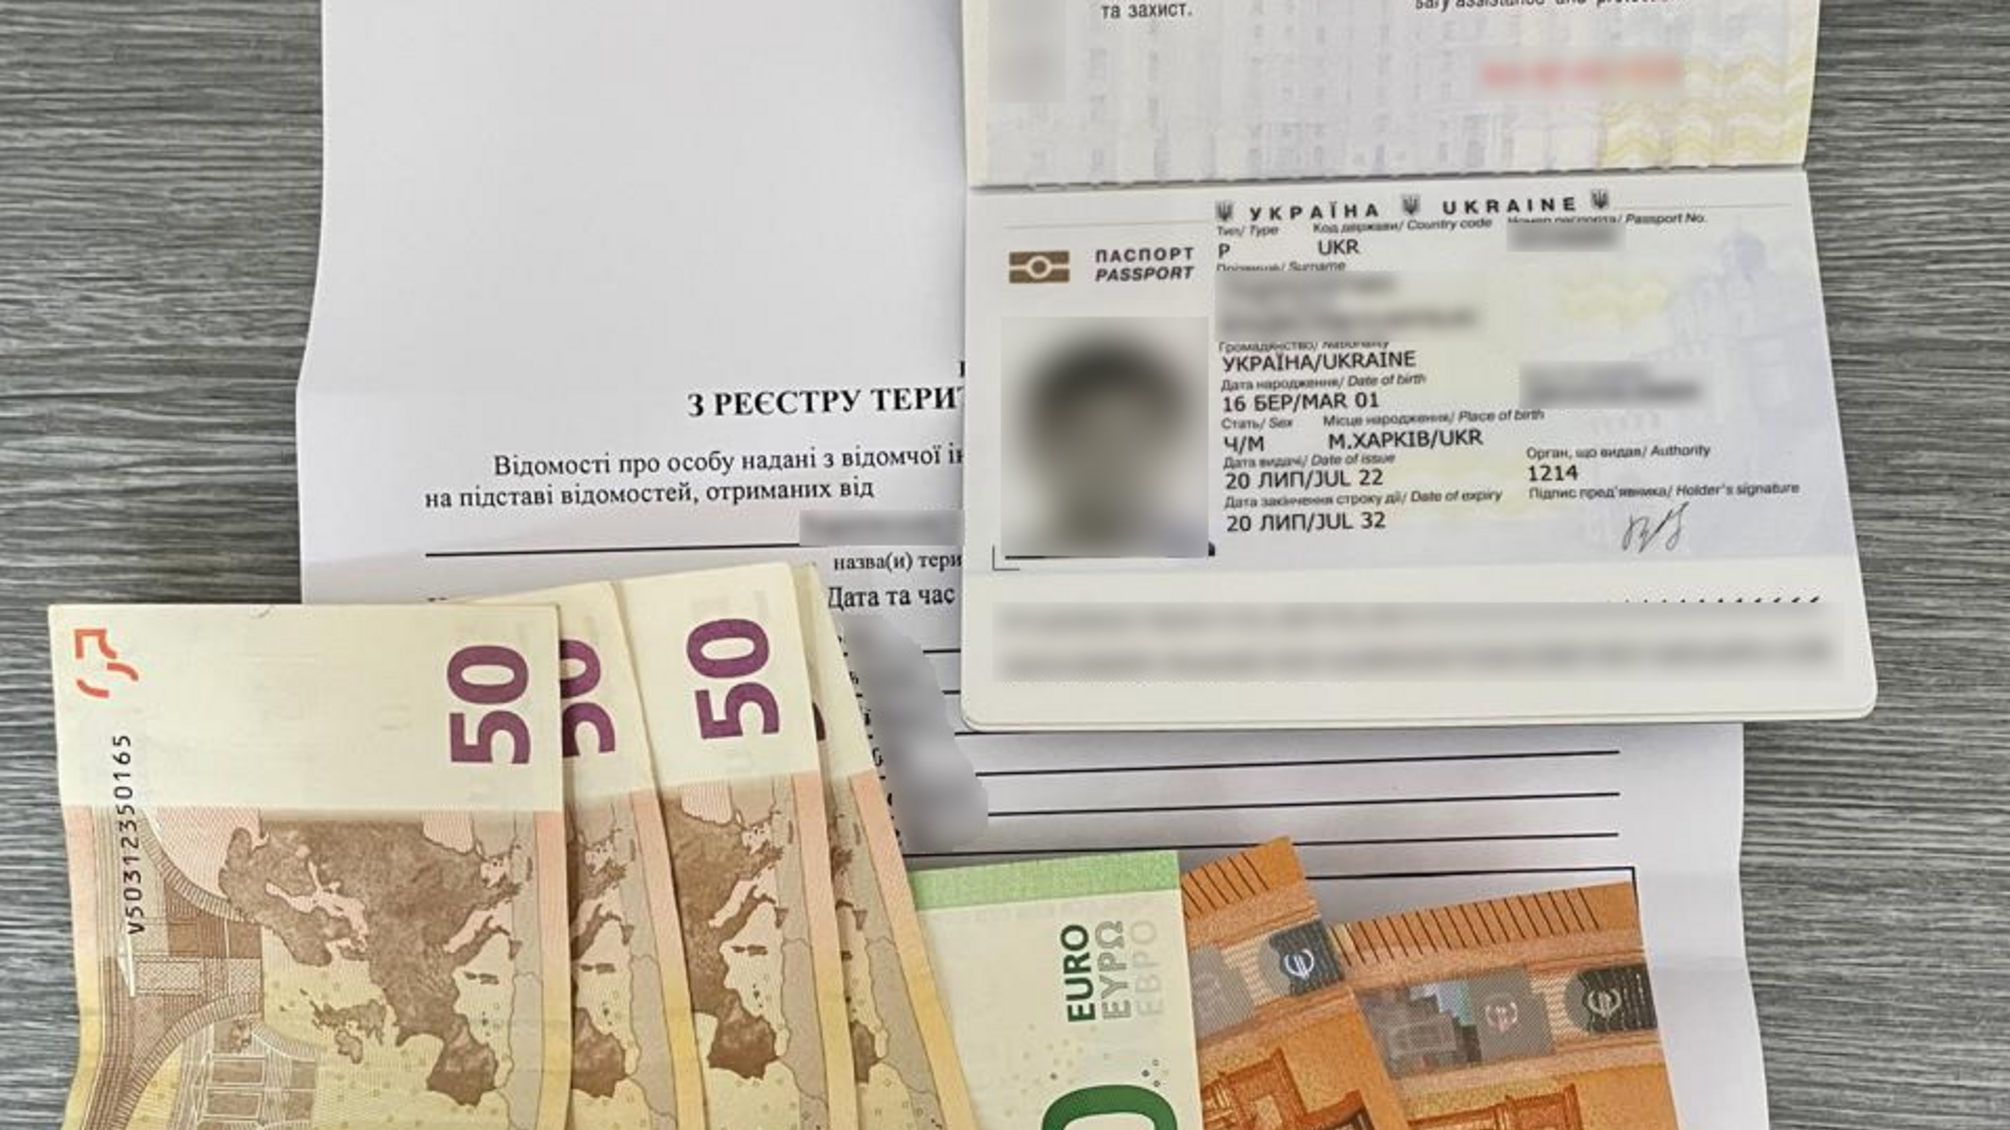 Подвійне фіаско: киянин, який хотів виїхати до Румунії завдяки підробленим документам, намагався дати хабар прикордонникам